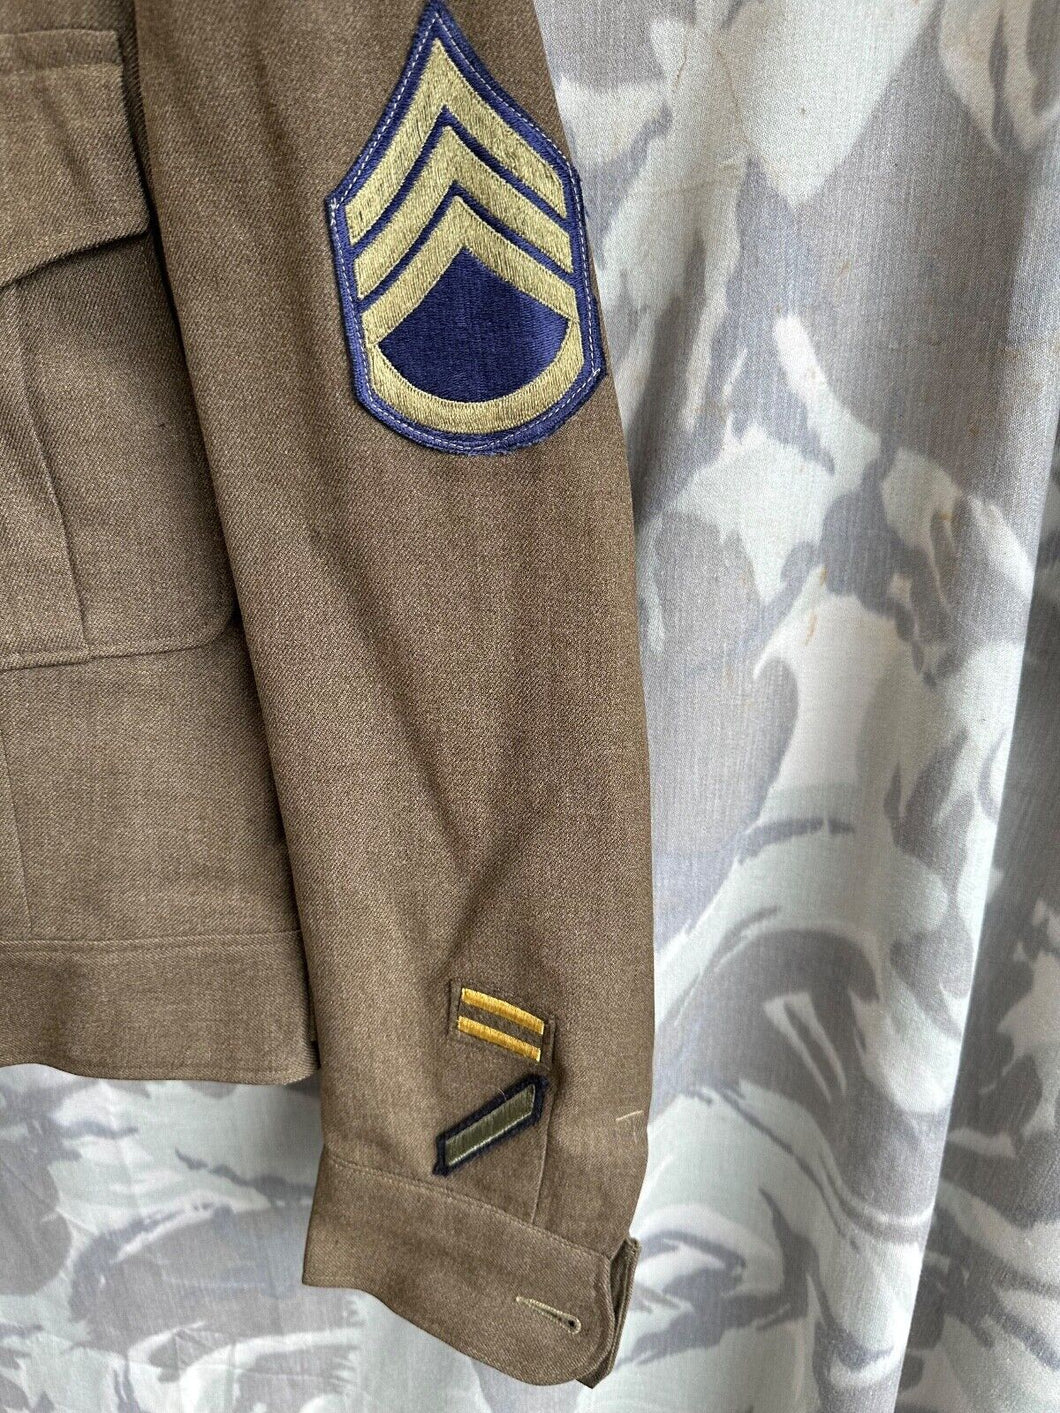 Original US Army Ike Jacket Uniform 36R